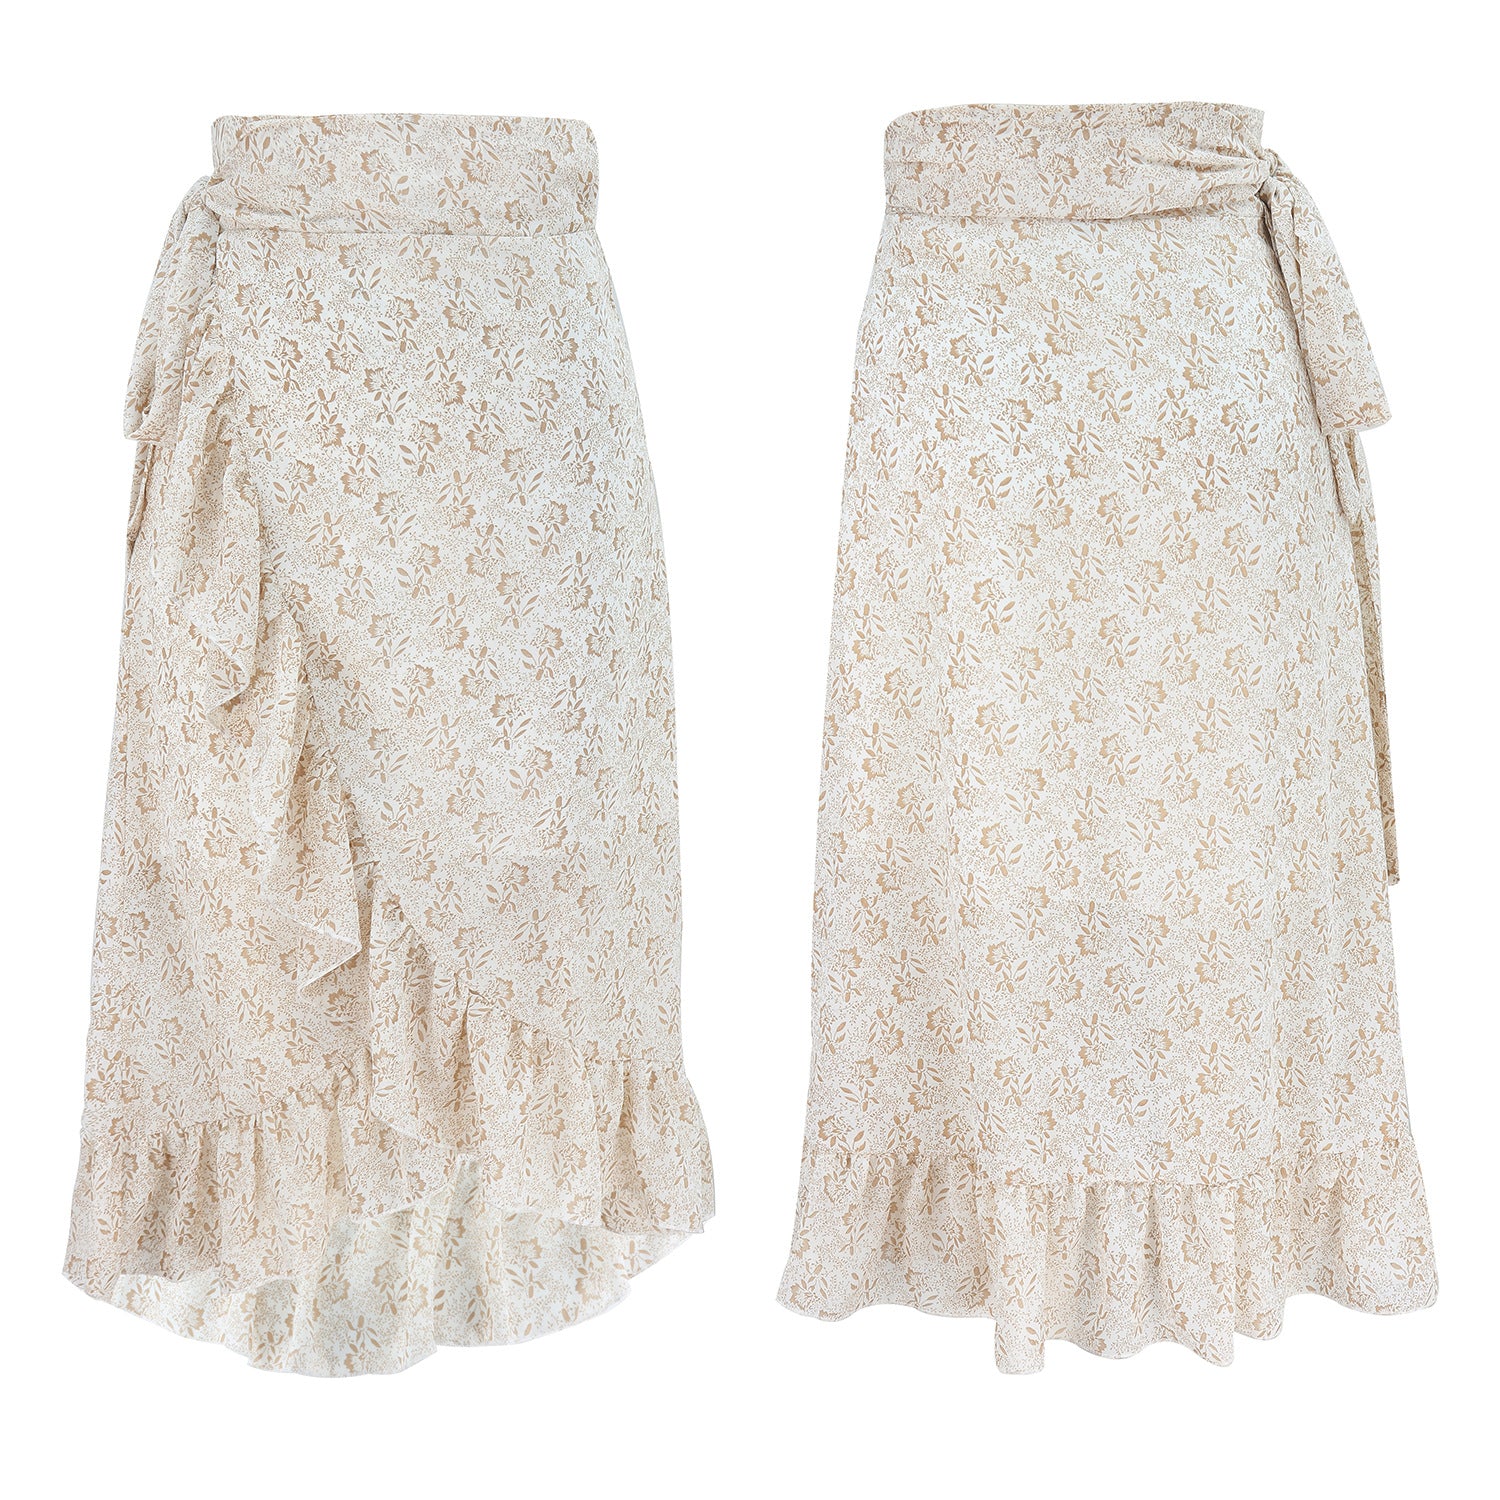 Strapless irregular floral chiffon skirt